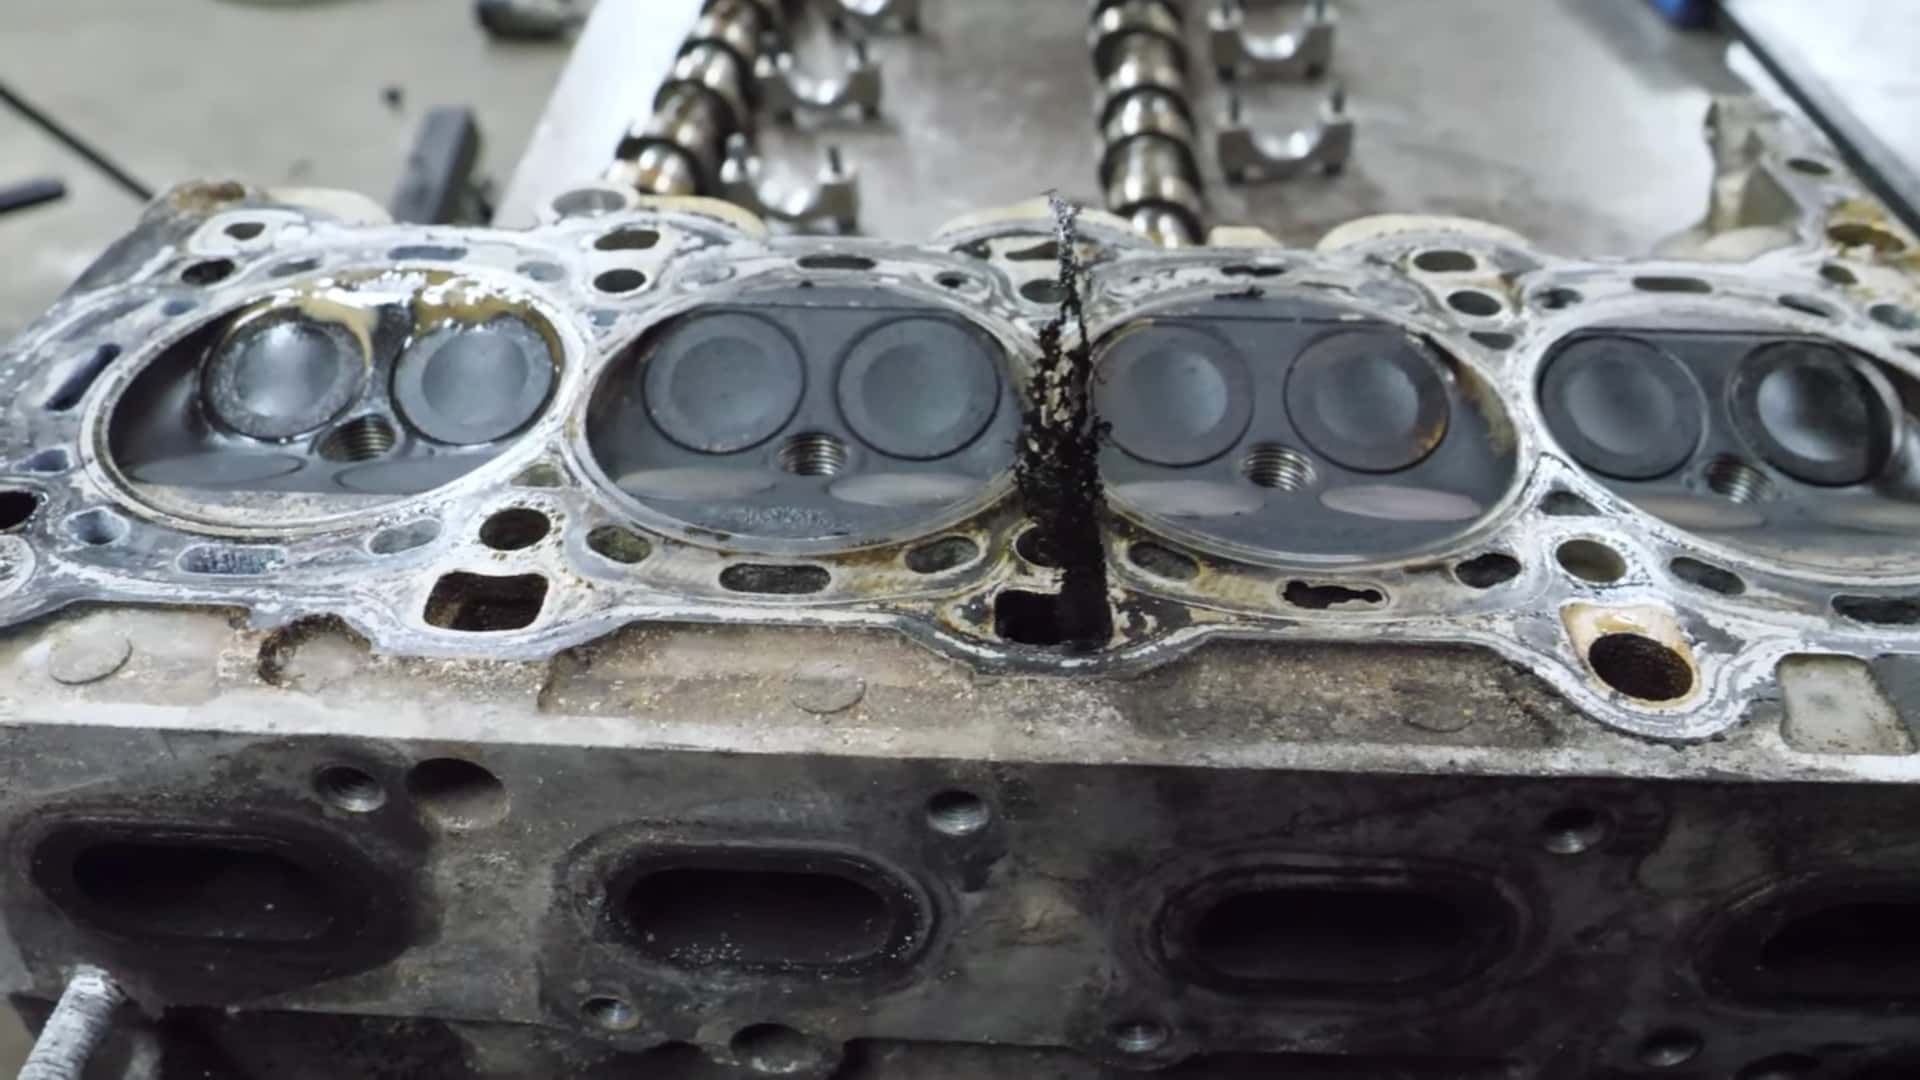 Demontarea motorului Chevy Turbo arată de ce lichidul de răcire și uleiul nu ar trebui să se amestece niciodată